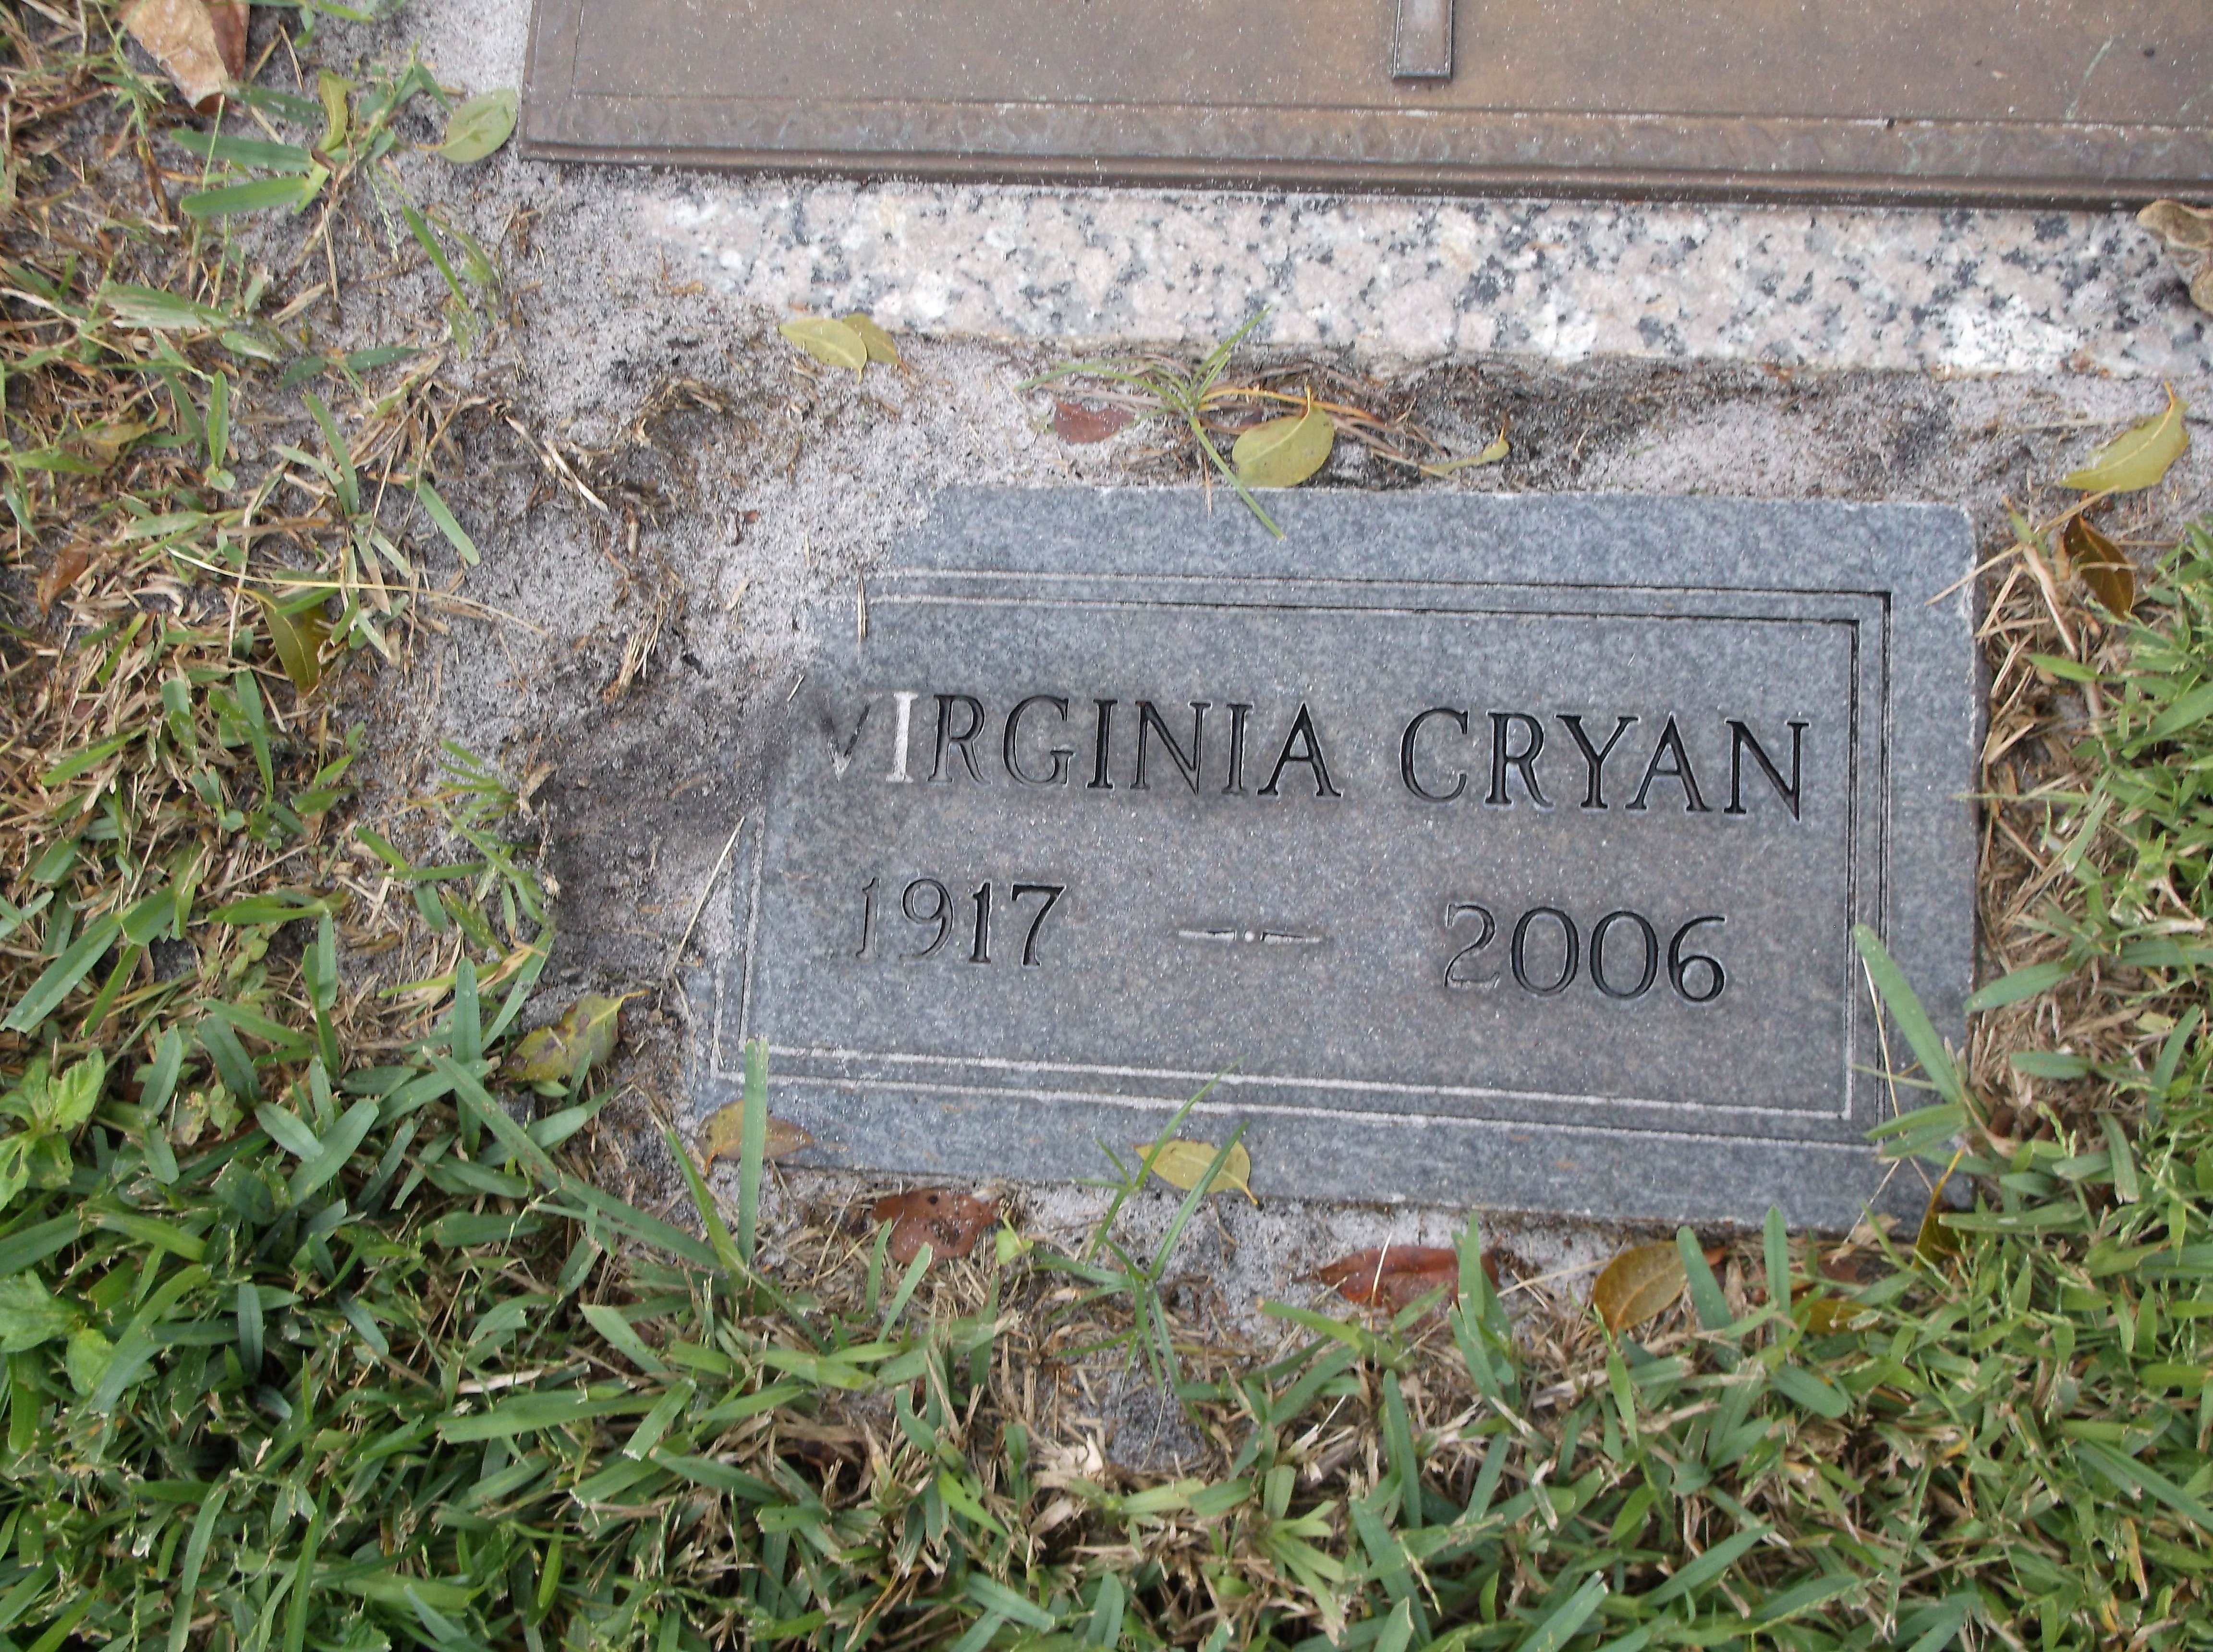 Virginia Cryan